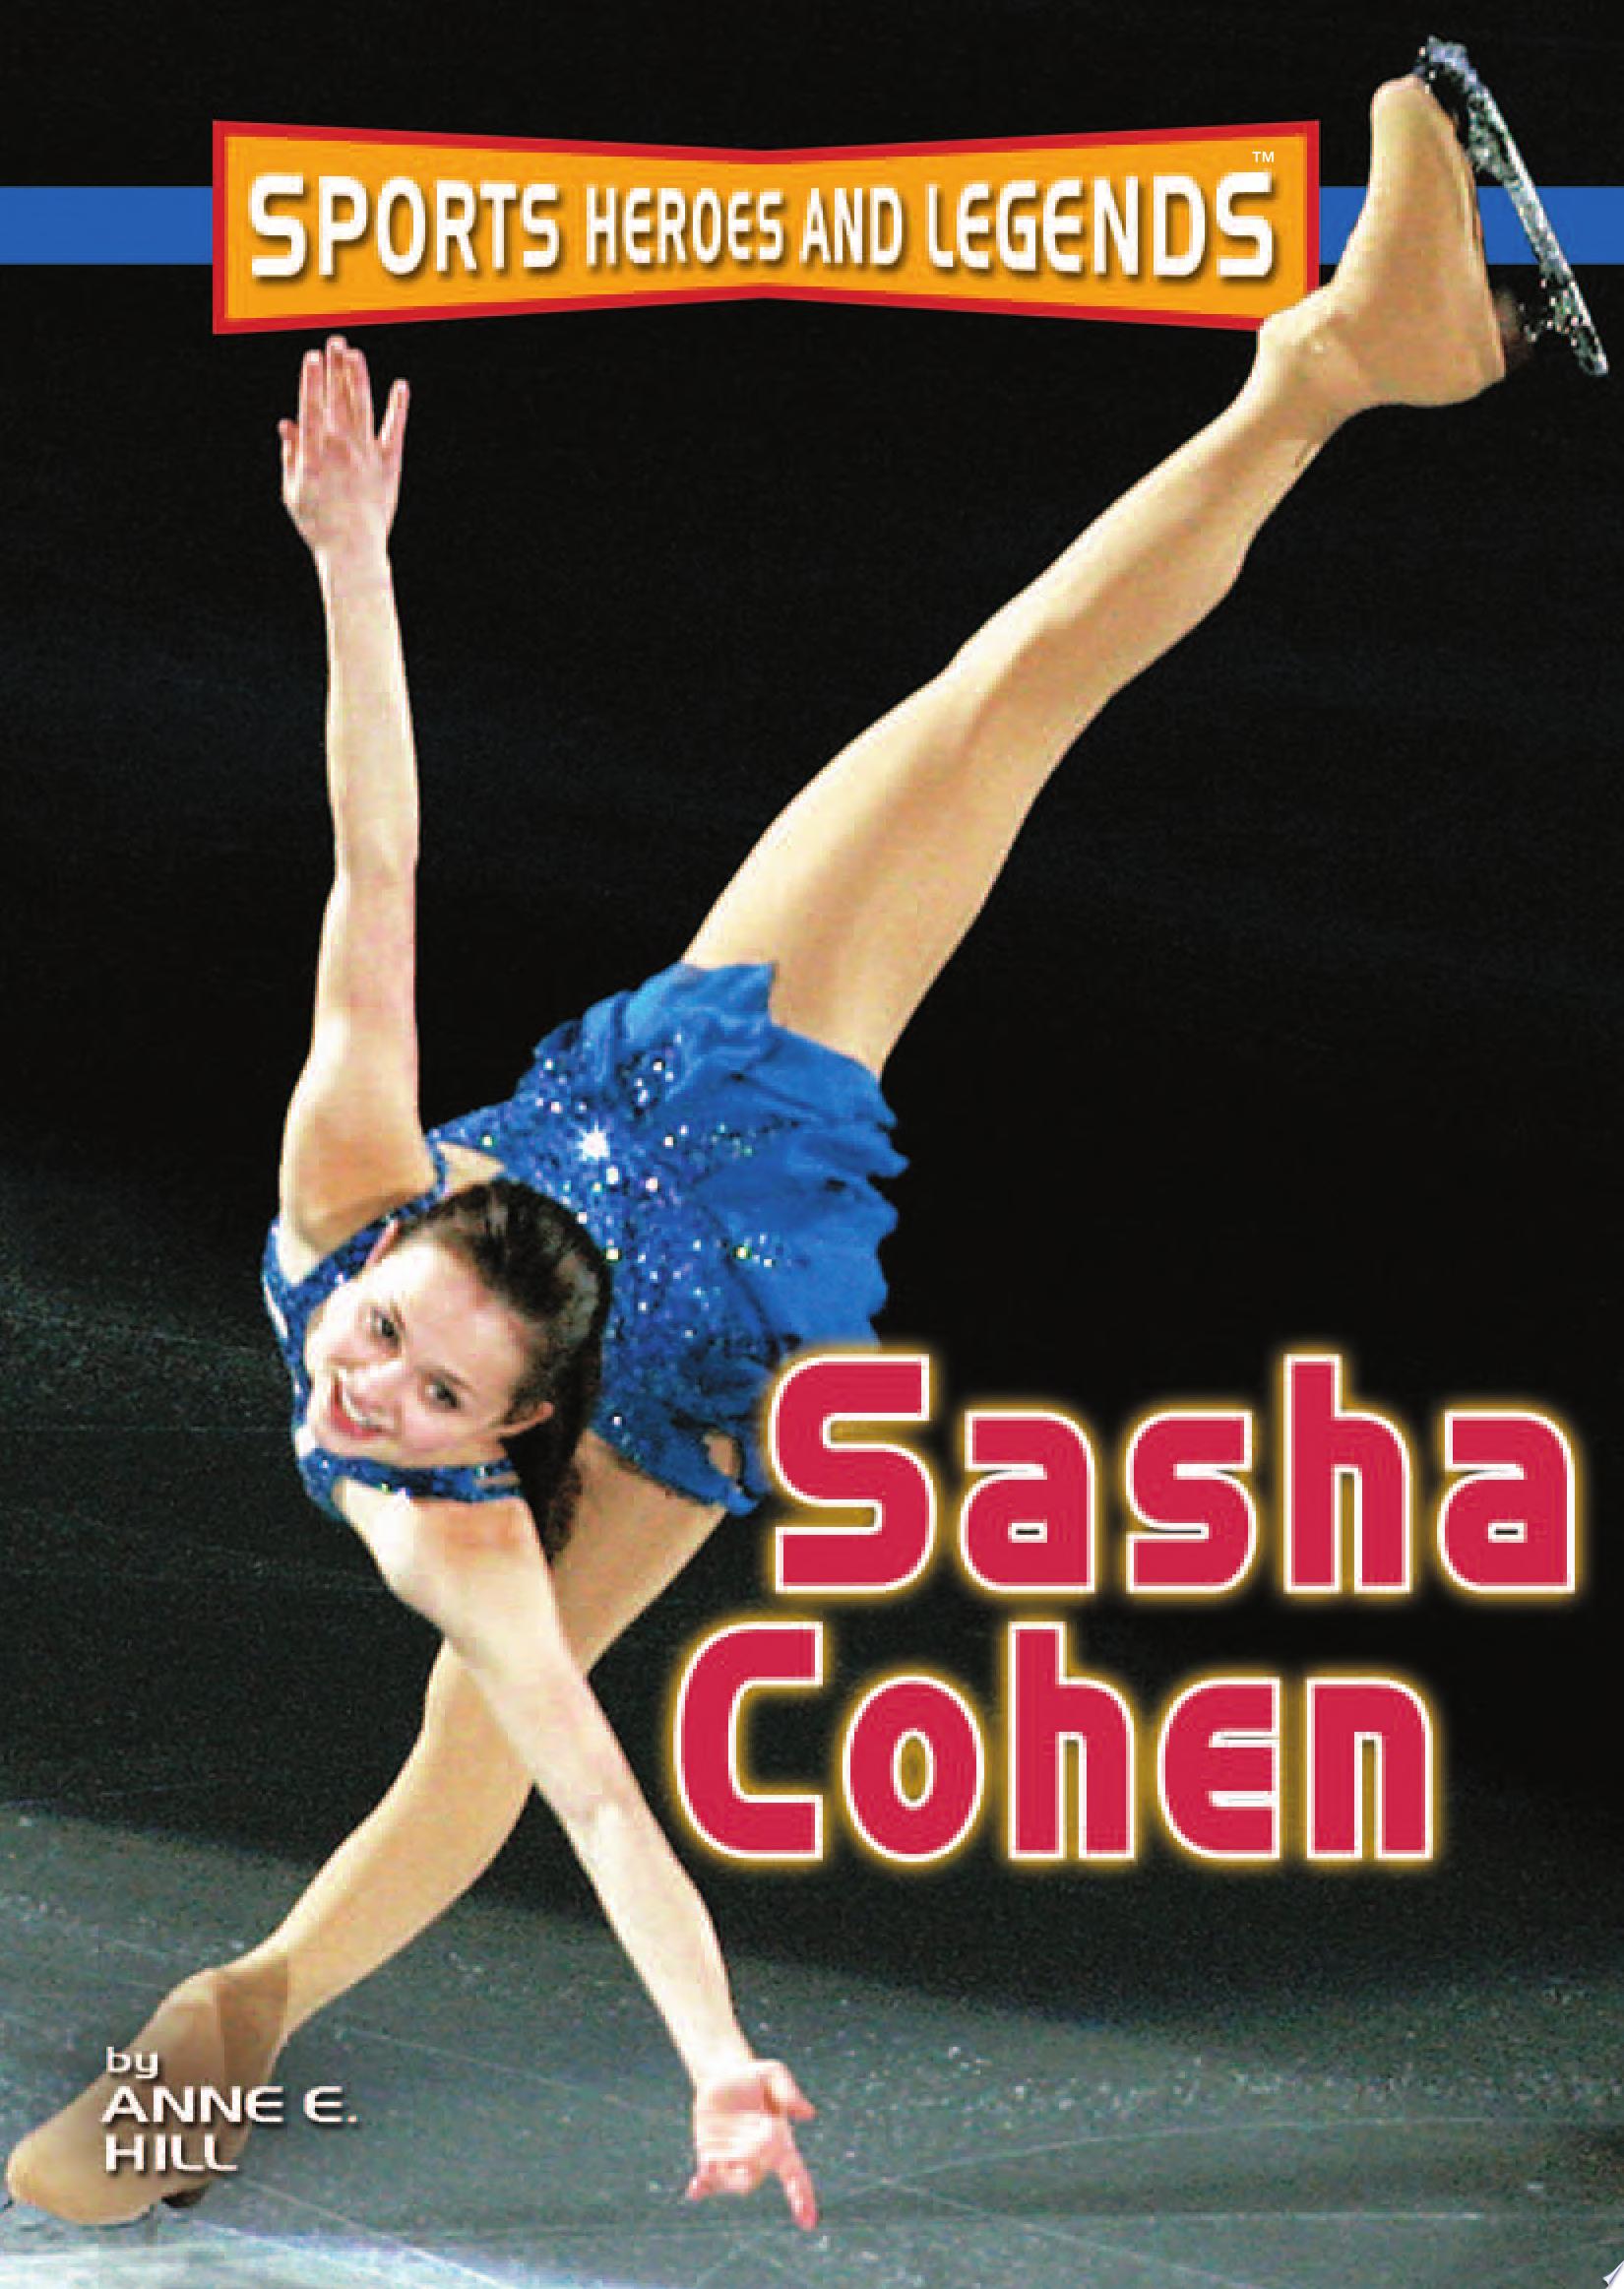 Image for "Sasha Cohen"